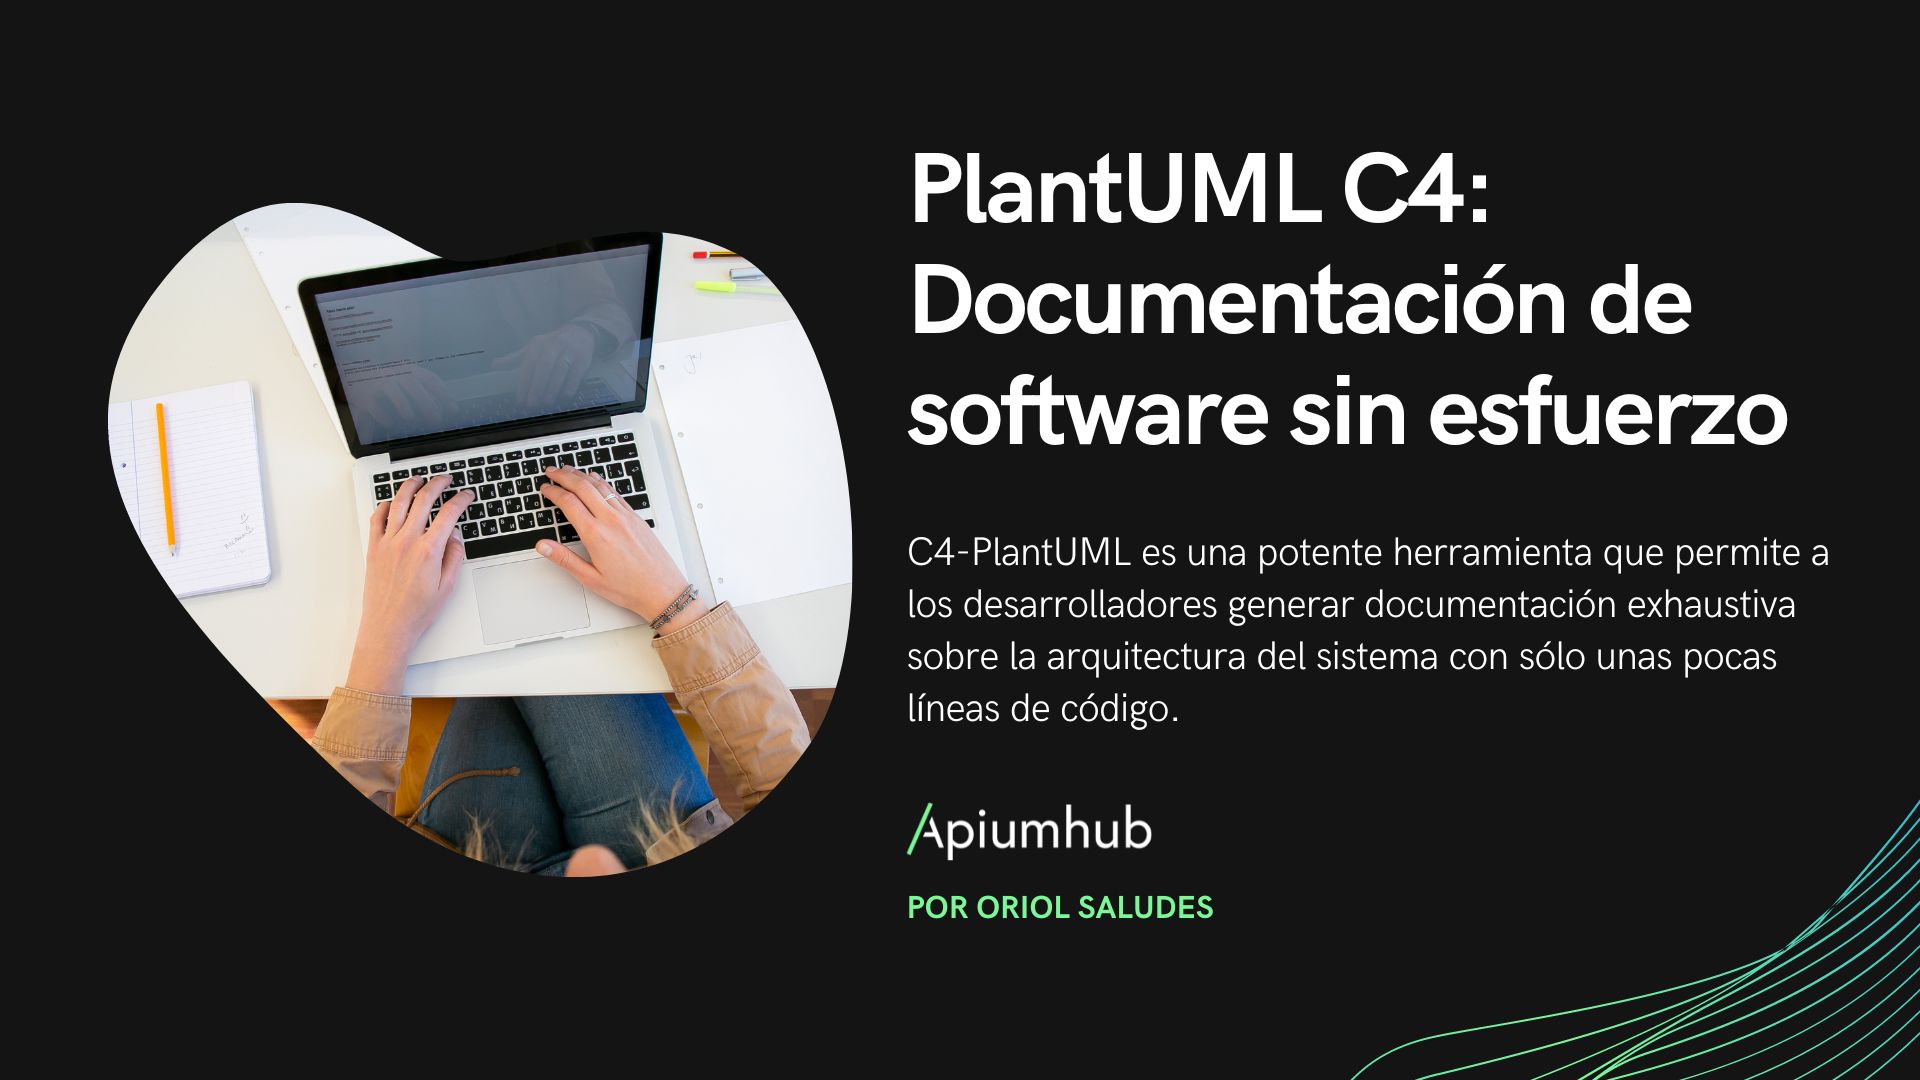 PlantUML C4: documentación de software sin esfuerzo